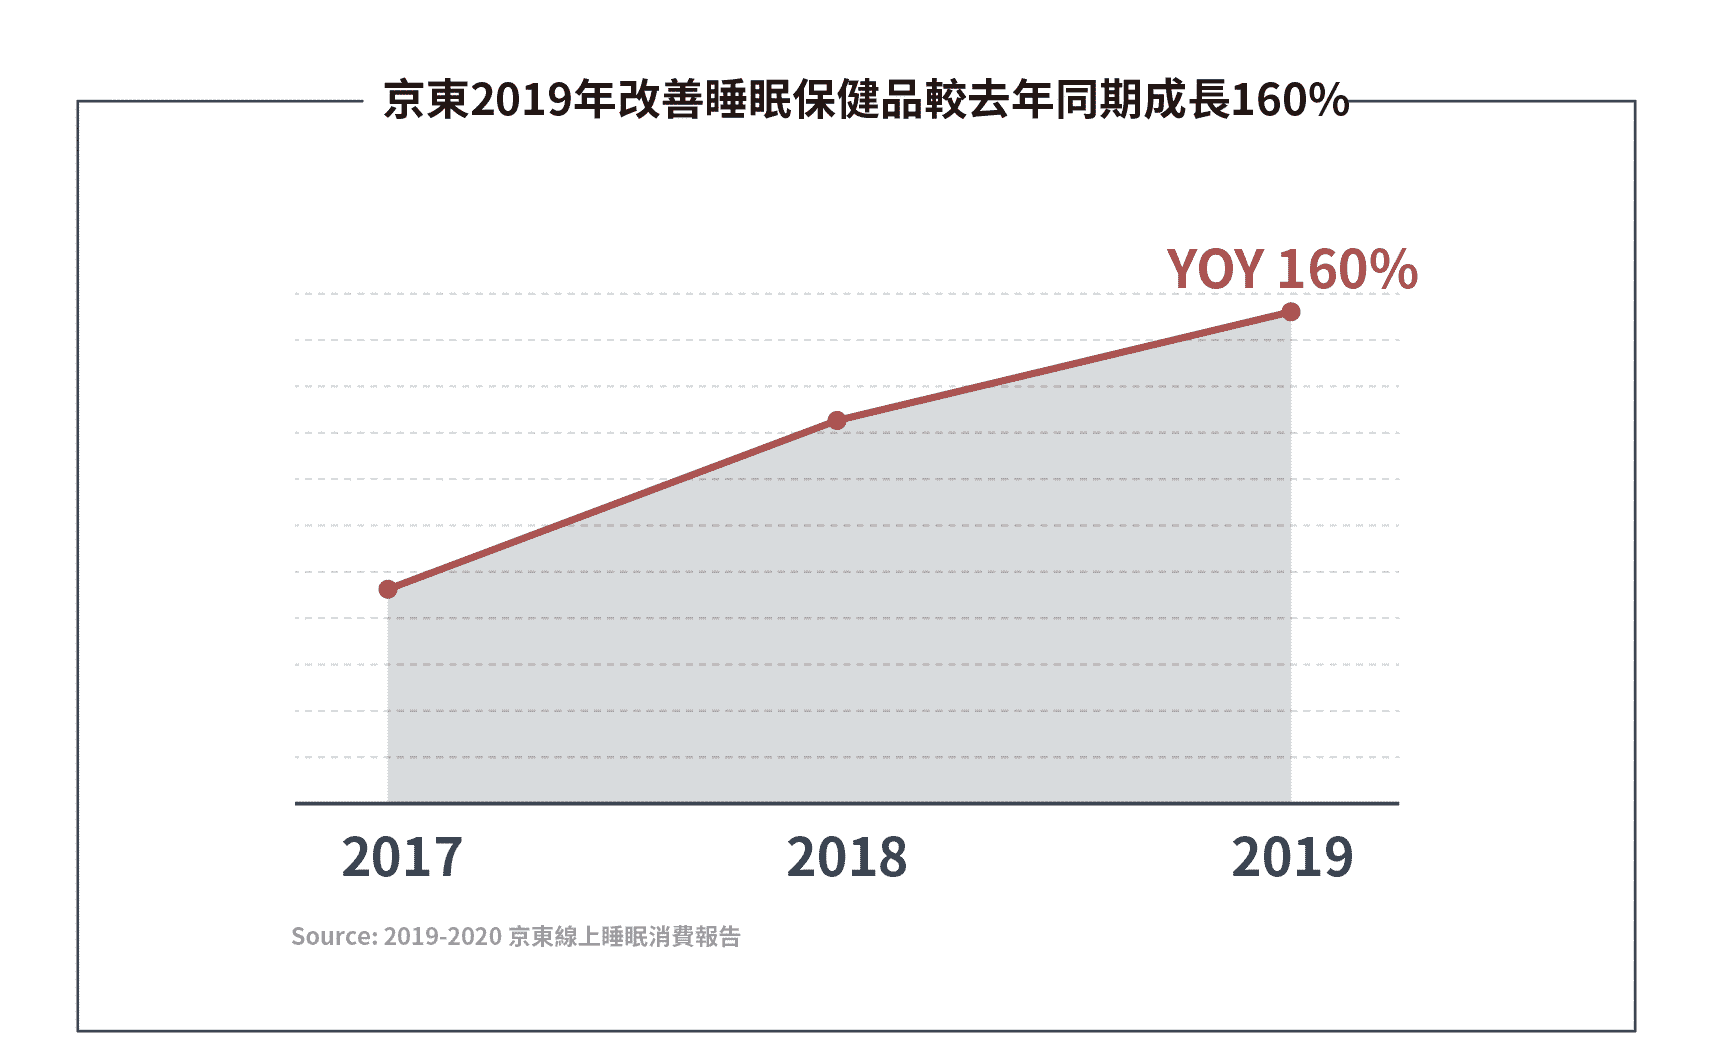 京東2019年改善睡眠保健品較去年同期成長160%